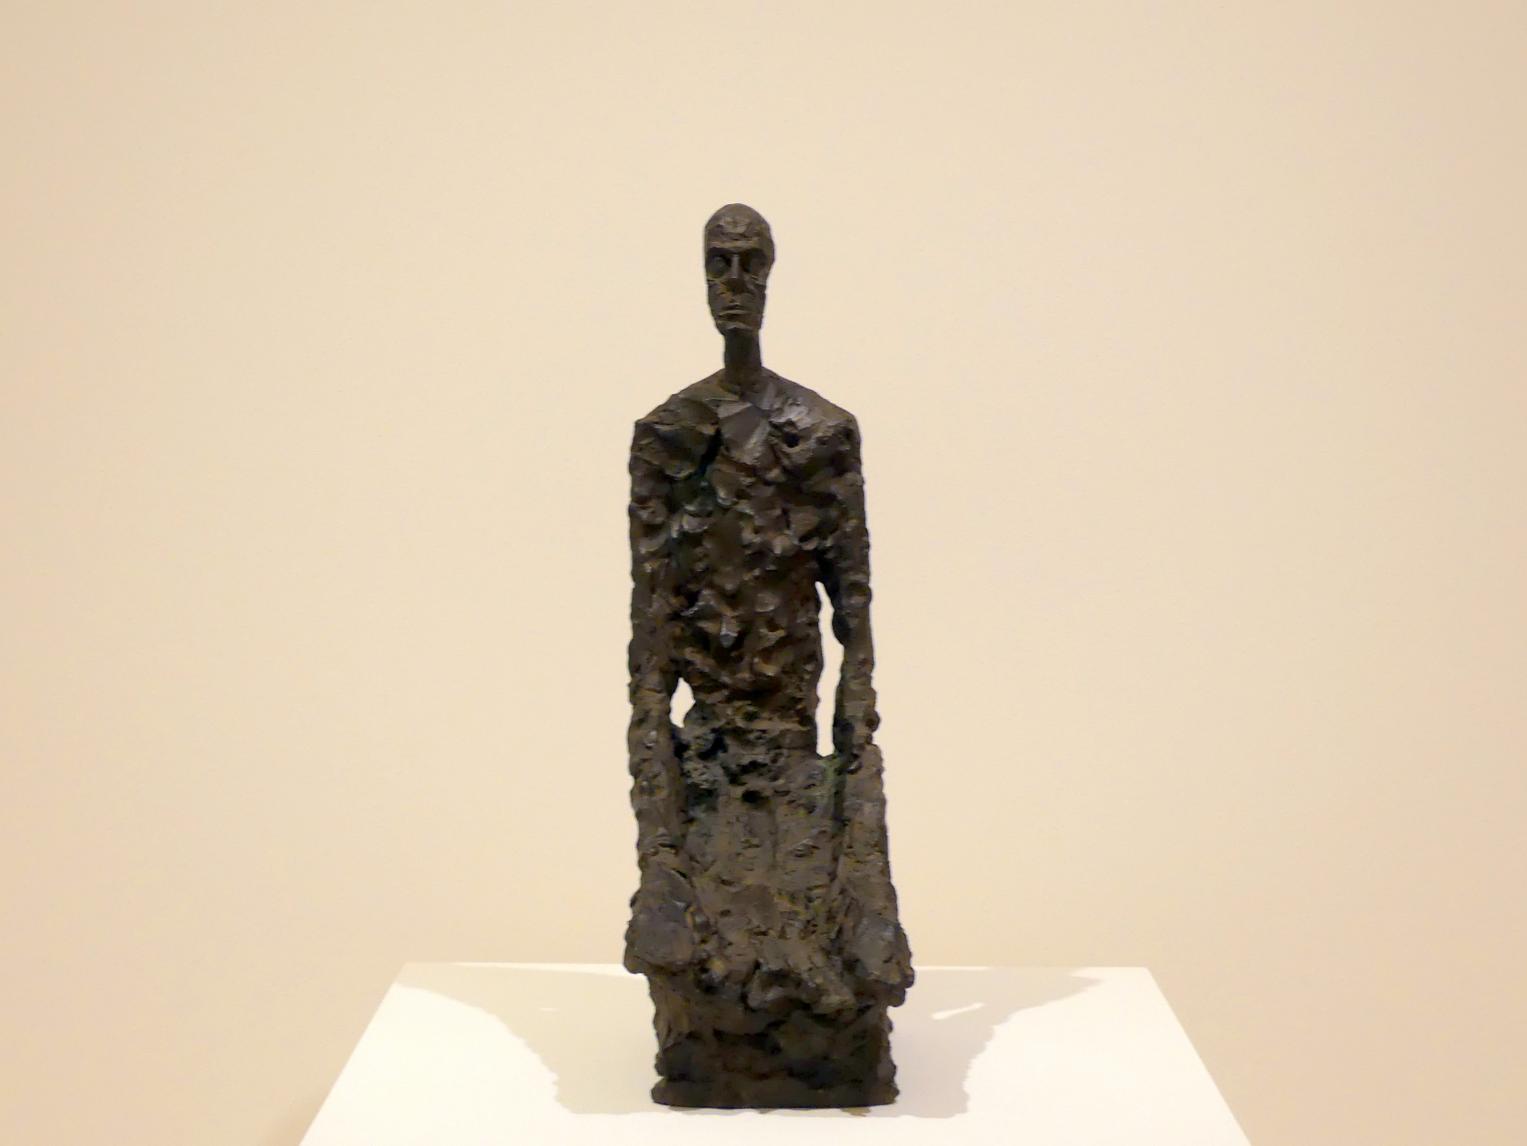 Alberto Giacometti (1914–1965), Halbporträt eines Mannes, Prag, Nationalgalerie im Messepalast, Ausstellung "Alberto Giacometti" vom 18.07.-01.12.2019, Kleine Skulpturen, 1965, Bild 1/6